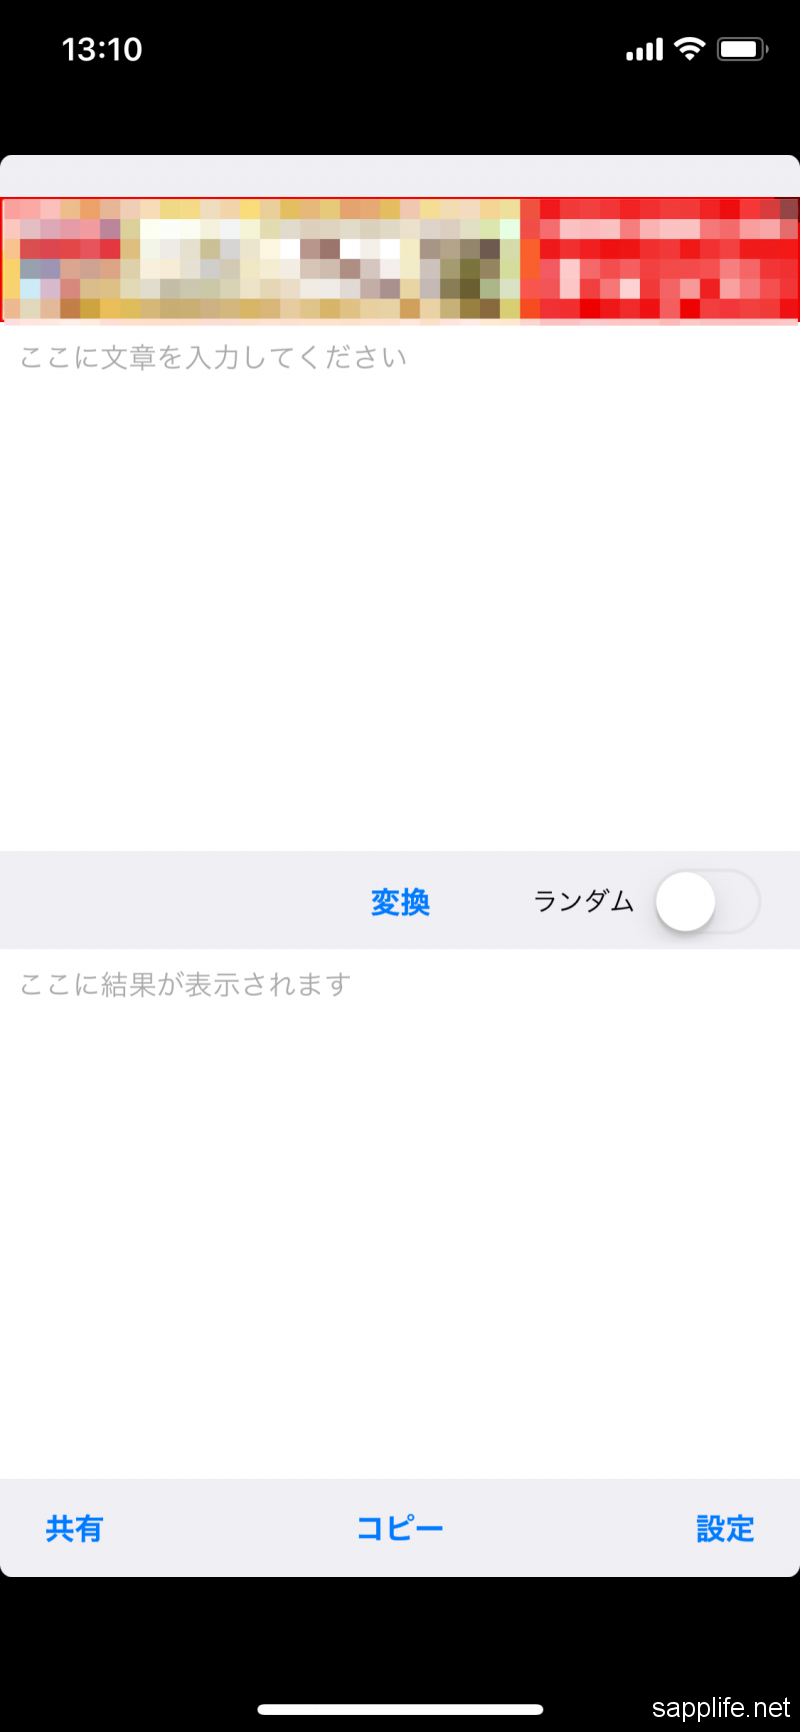 何これ面白い 好きな文章に自動で濁点をつけてくれる無料iphoneアプリ Dakuten スマホアプリライフ